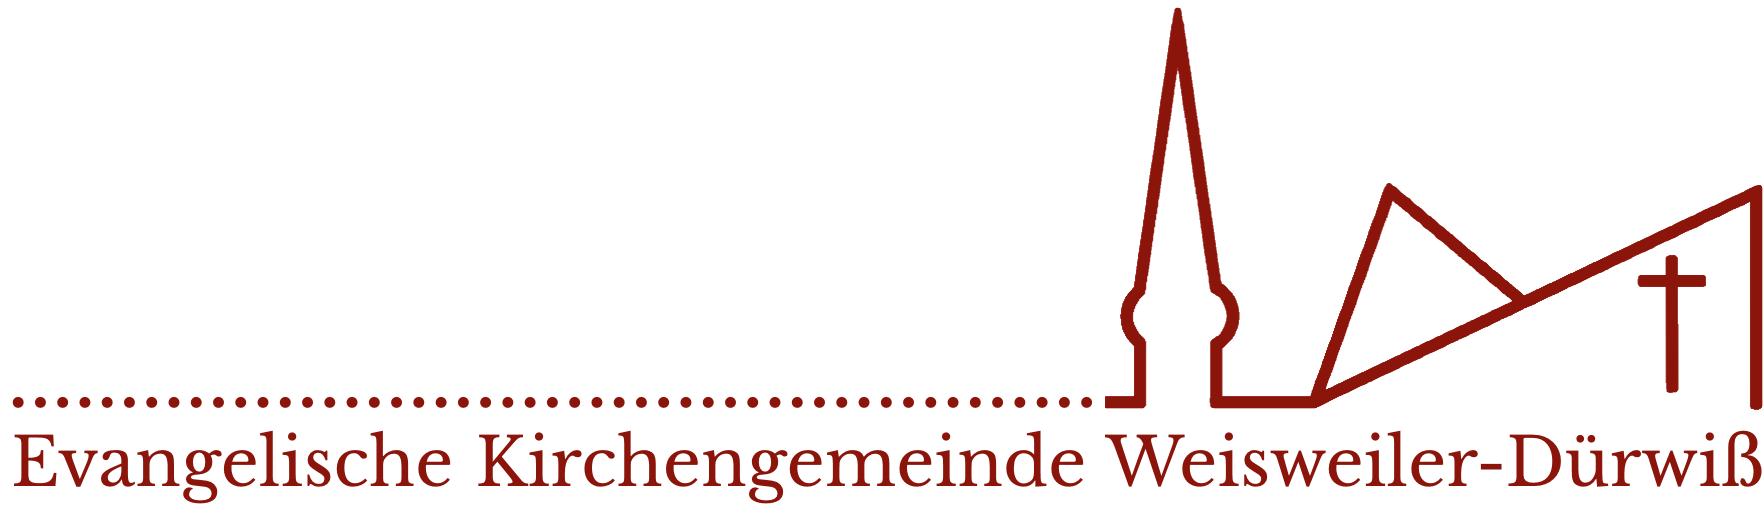 Evangelische Kirchengemeinde Weisweiler-Dürwiß